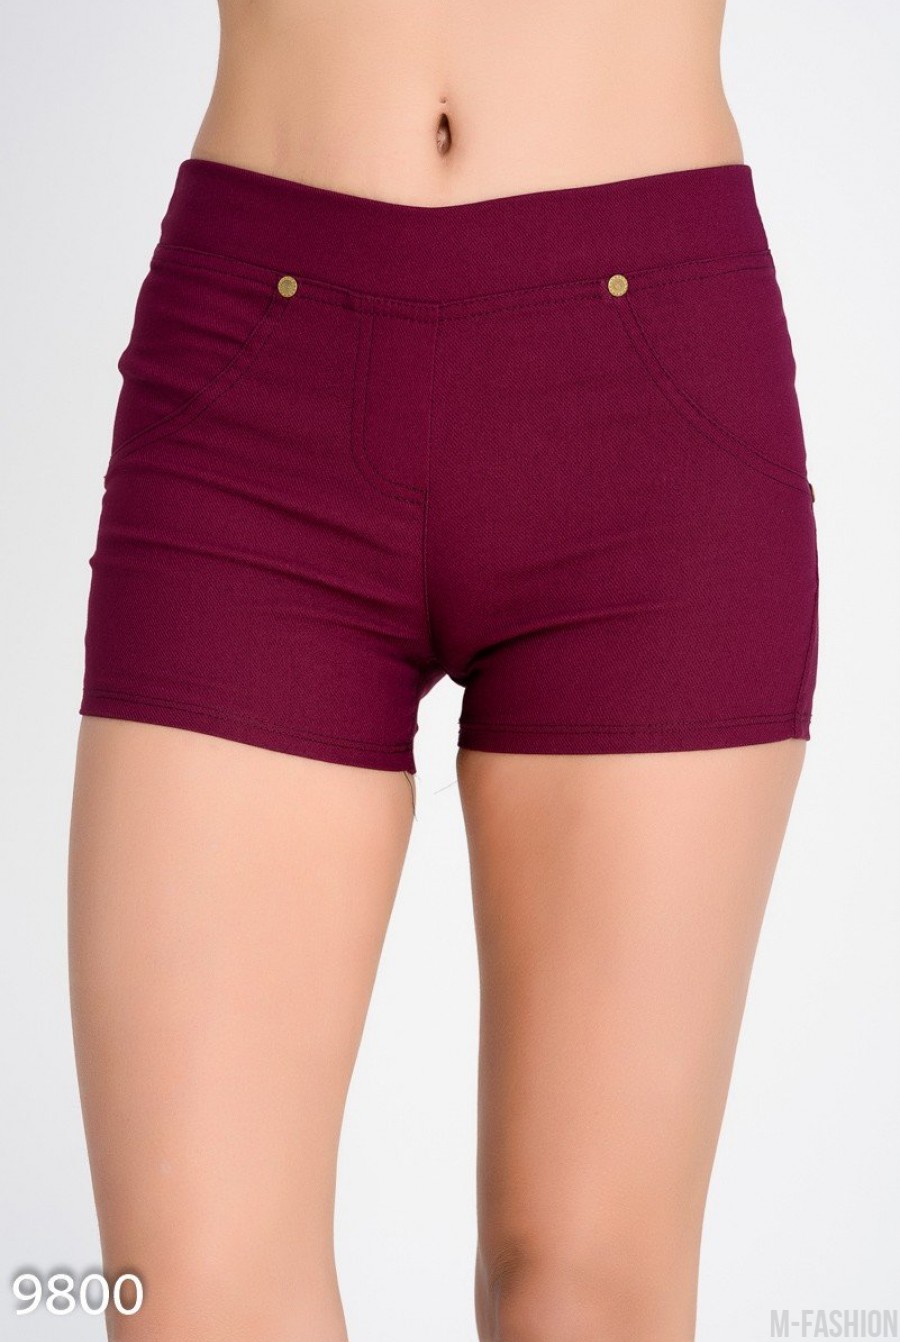 Фиолетовые короткие шорты из хлопка-стрейч под джинс - Фото 1